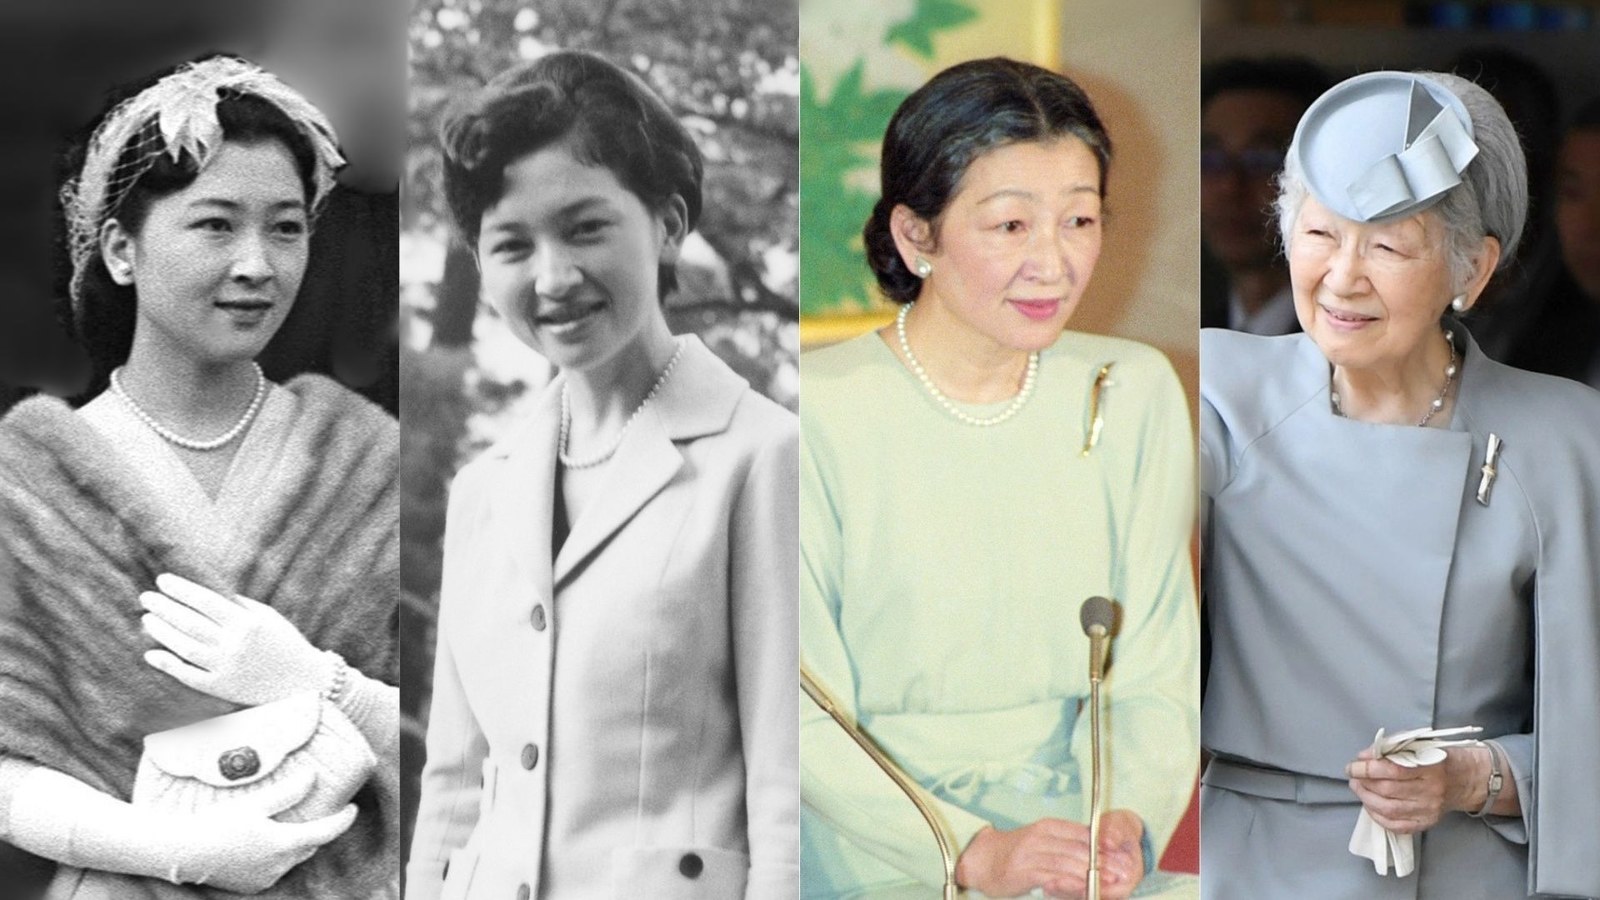 皇后」美智子さまが歩まれた平成の30年。友人が見た苦悩と葛藤の日々